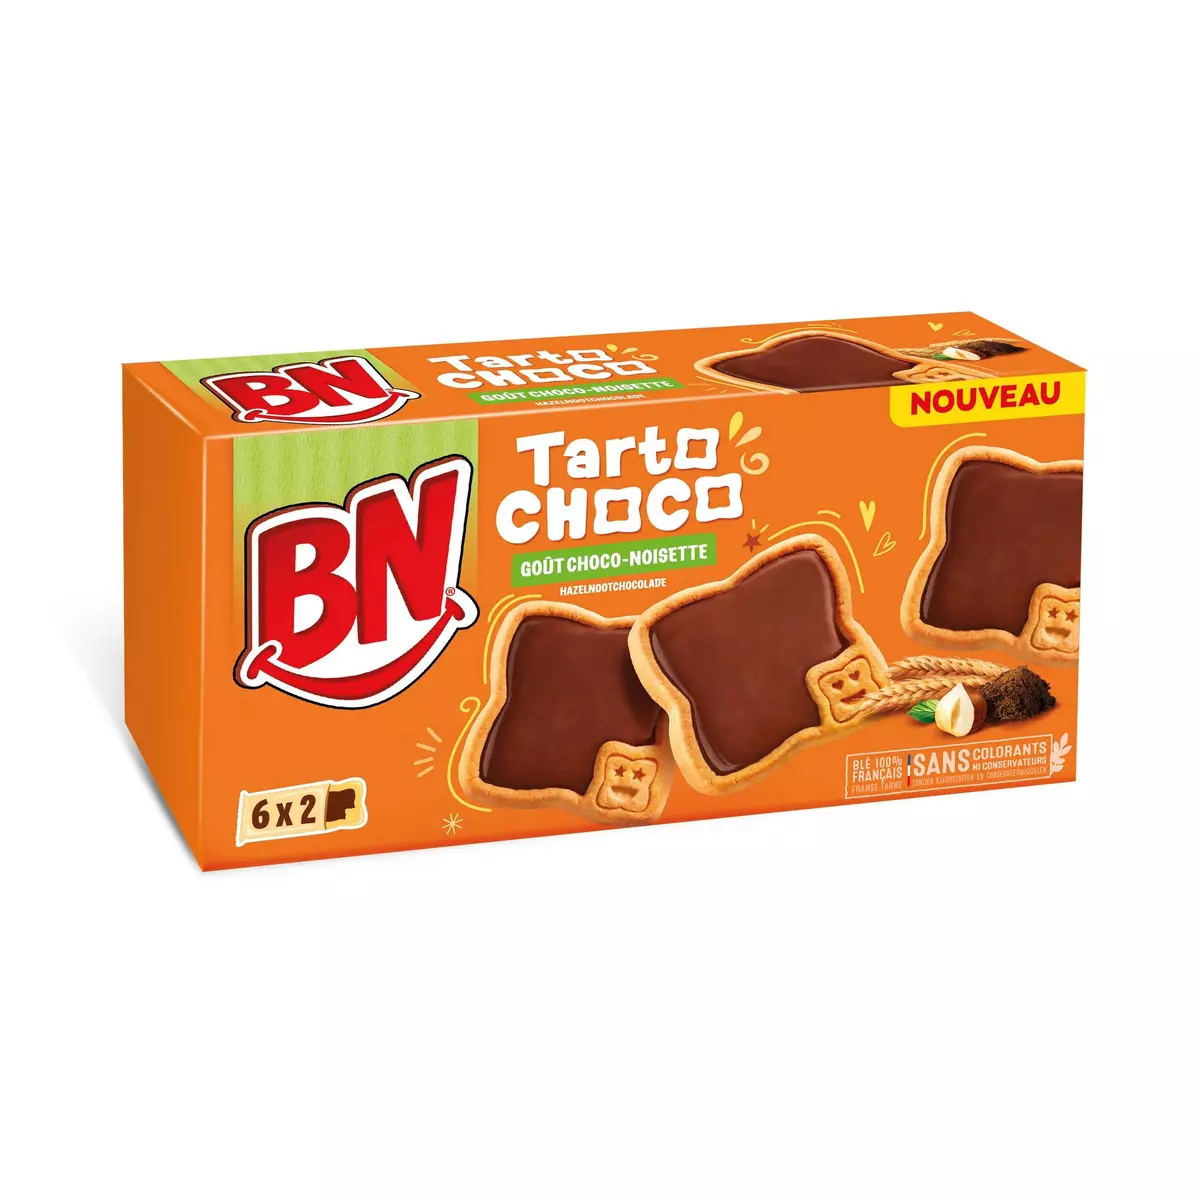 BN Tarto choco biscuits goût chocolat noisette 6x2 biscuits 200g